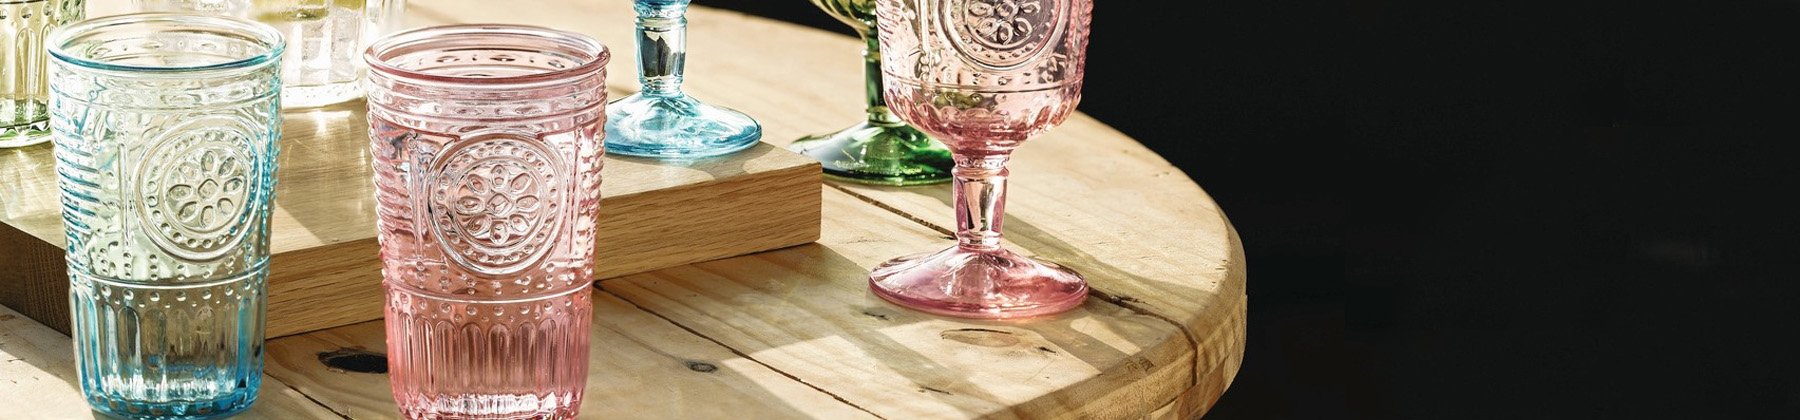 Photo of colorful Bormioli Rocco glassware.